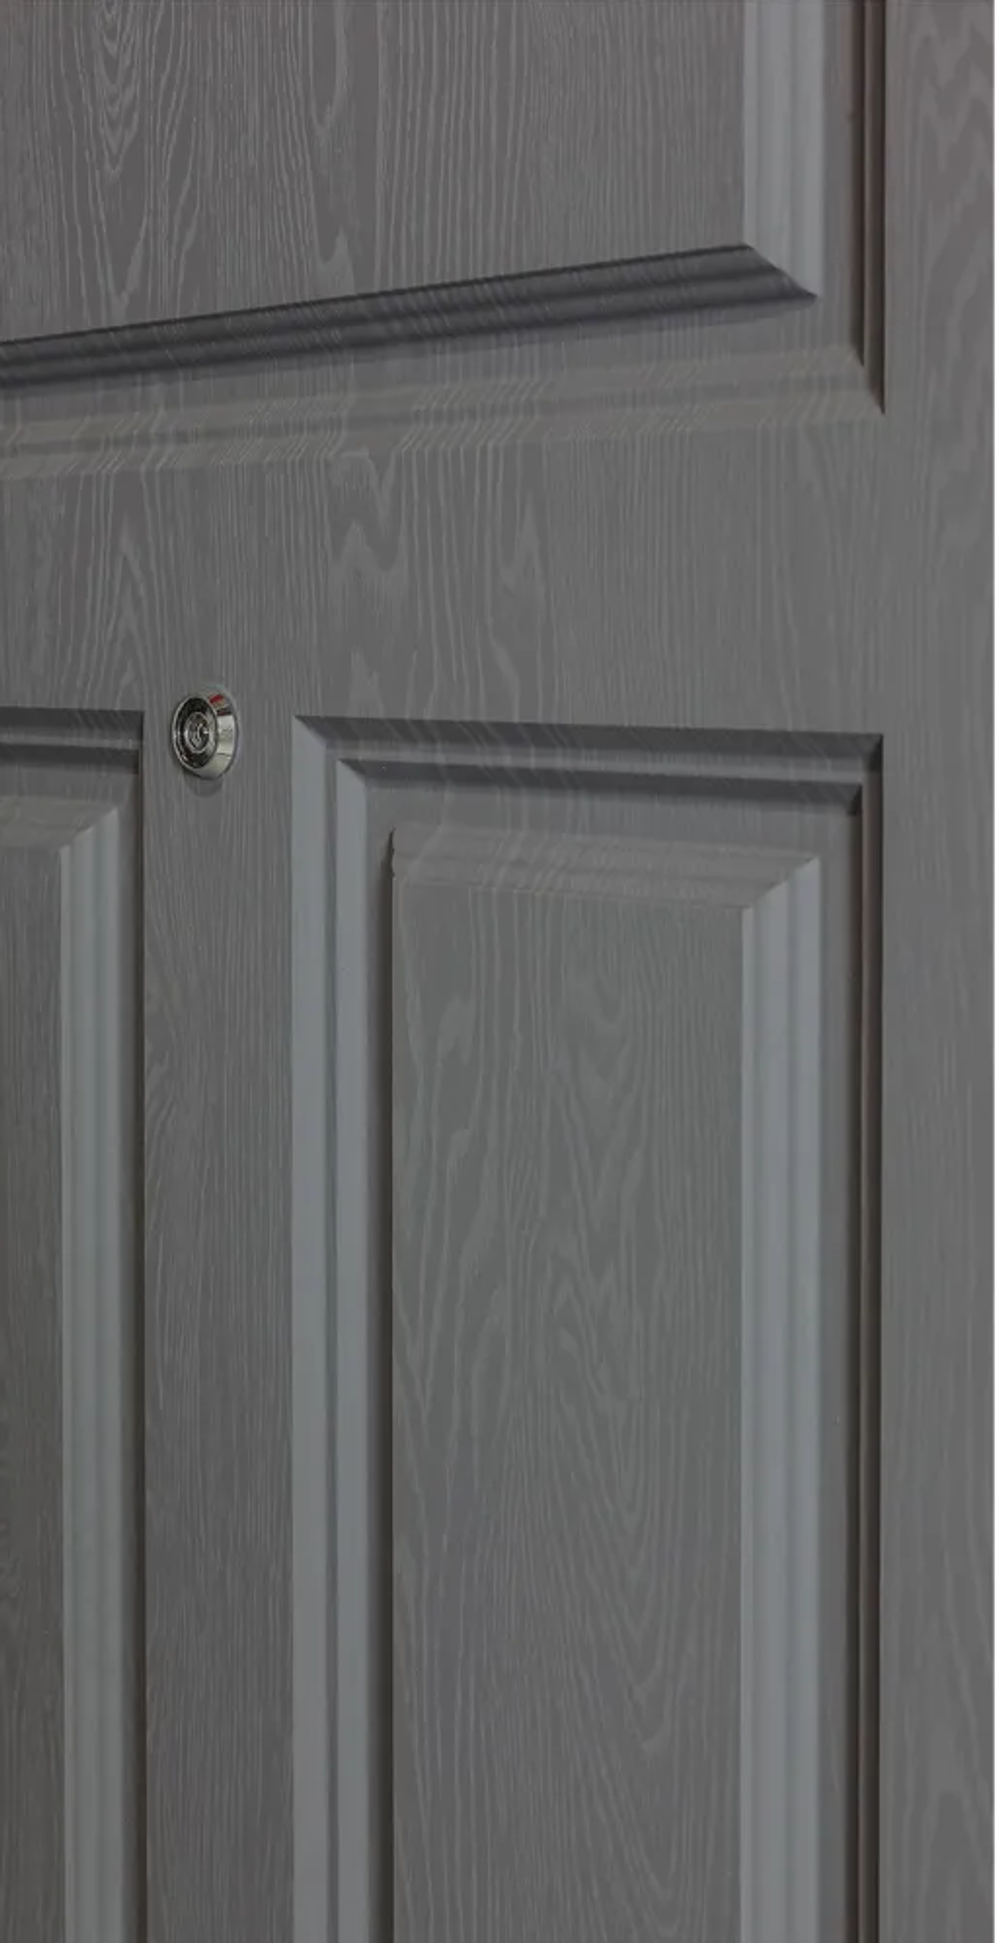 Входная дверь с шумоизоляцией STR MX-29 Ясень графит / Д 7 Силк маус (светло-серый, без текстуры)